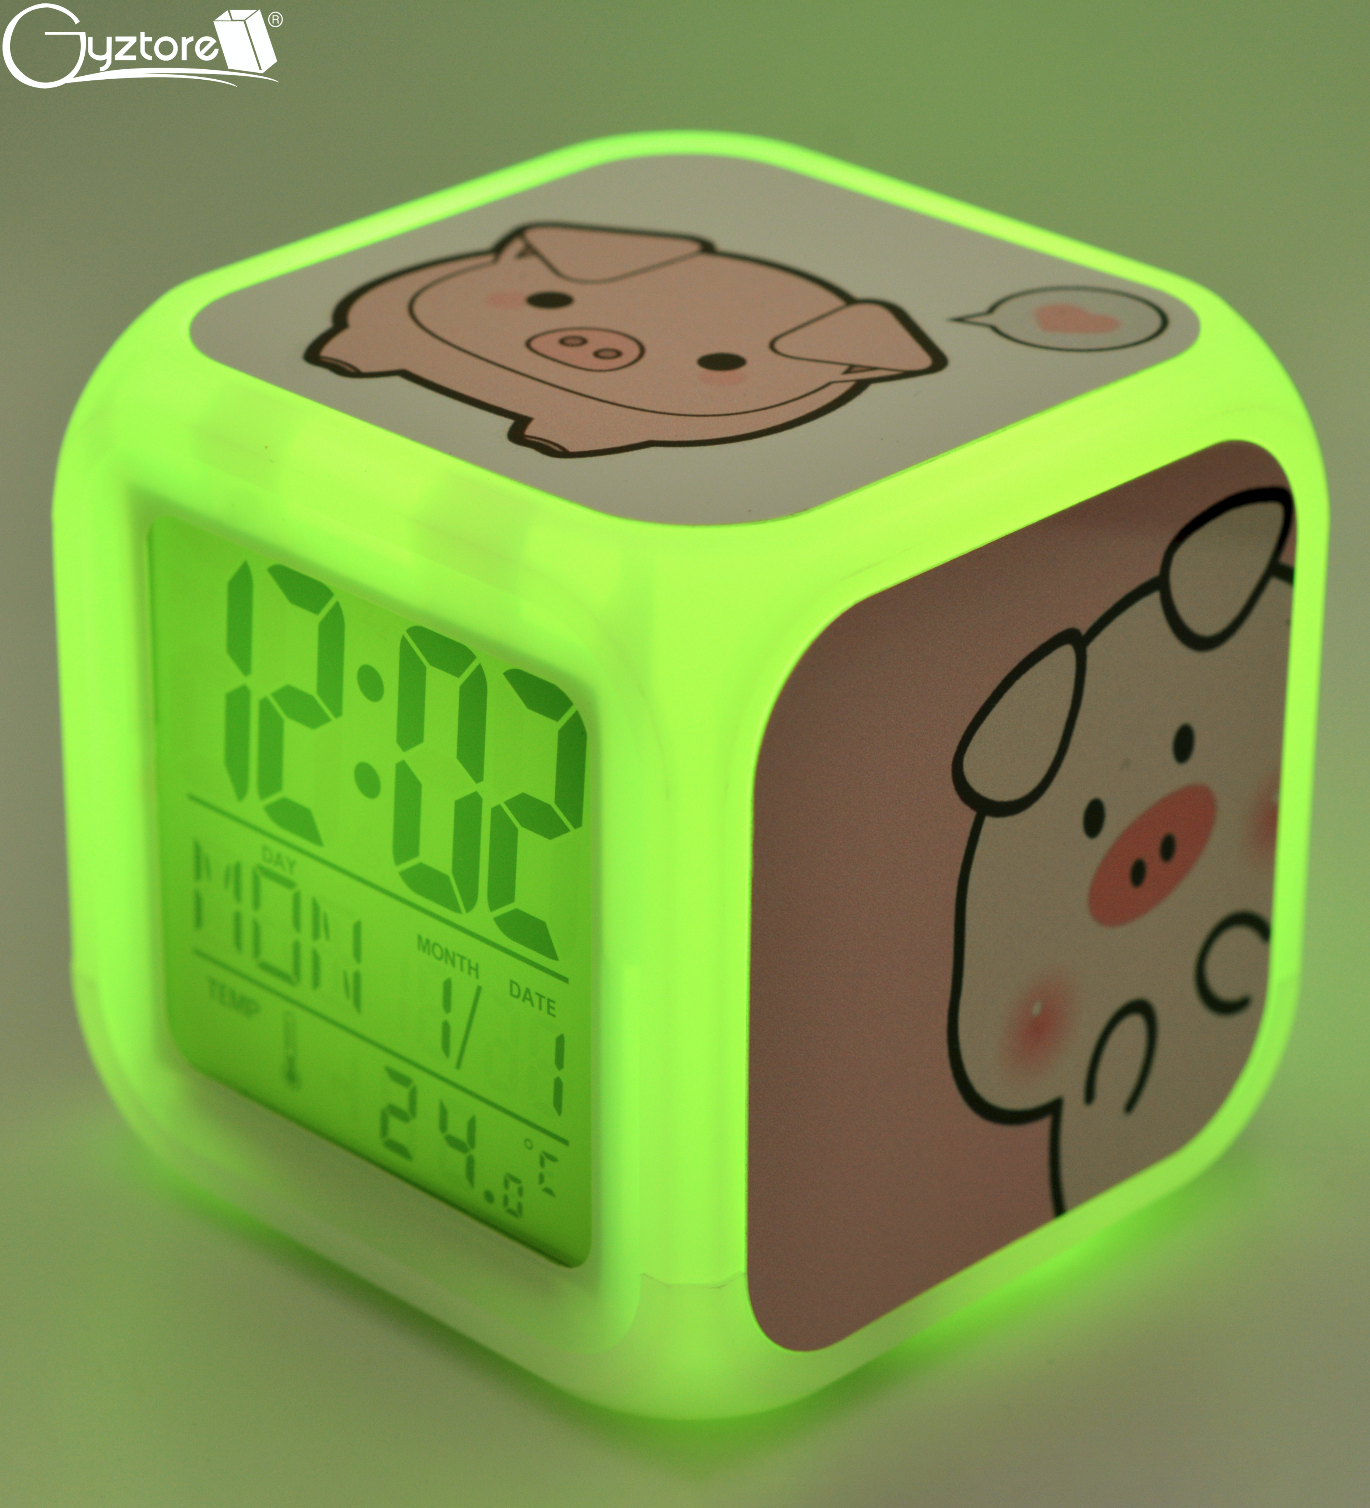 Gyztore - Rlojes cubicos digitales con LED multicolor diseño de Stitch.  Tienen alarma, dan la hora, el día, la fecha y miden la temperatura. 😉  Valor: ₡11,900 😎 Miden 8cm x 8cm.